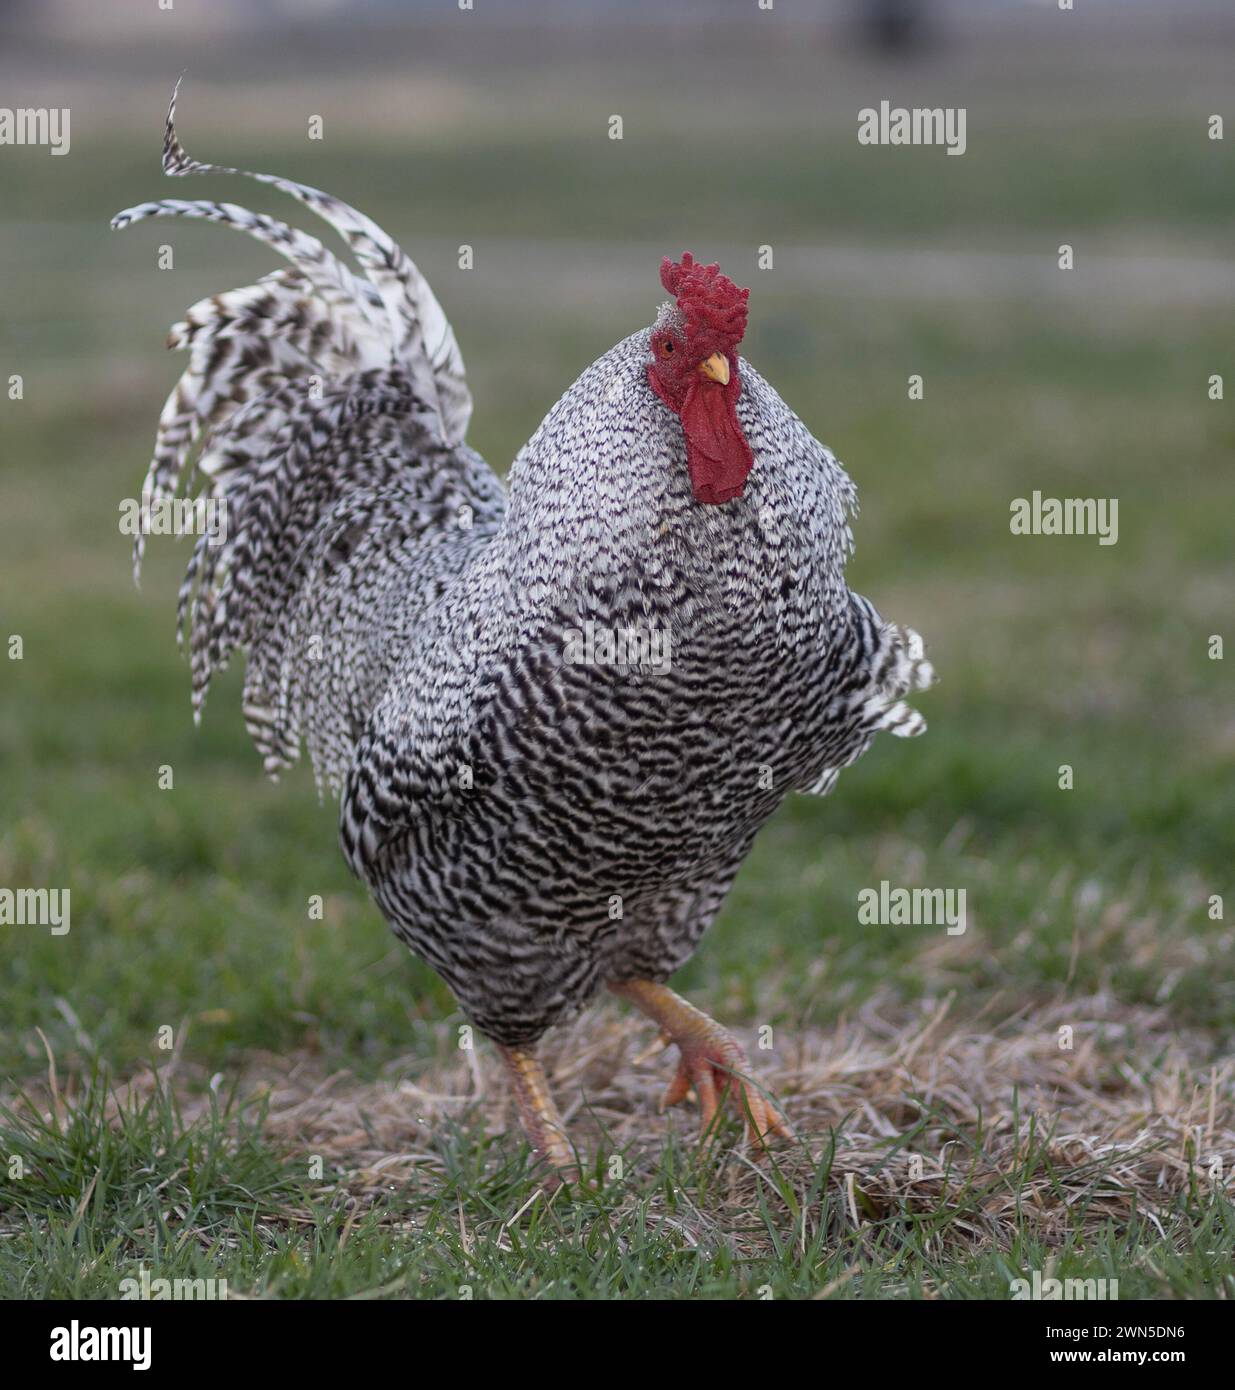 Gallo de pollo Dominique de rango libre que salta hacia la cámara en un pasto gressy en Carolina del Norte. Foto de stock